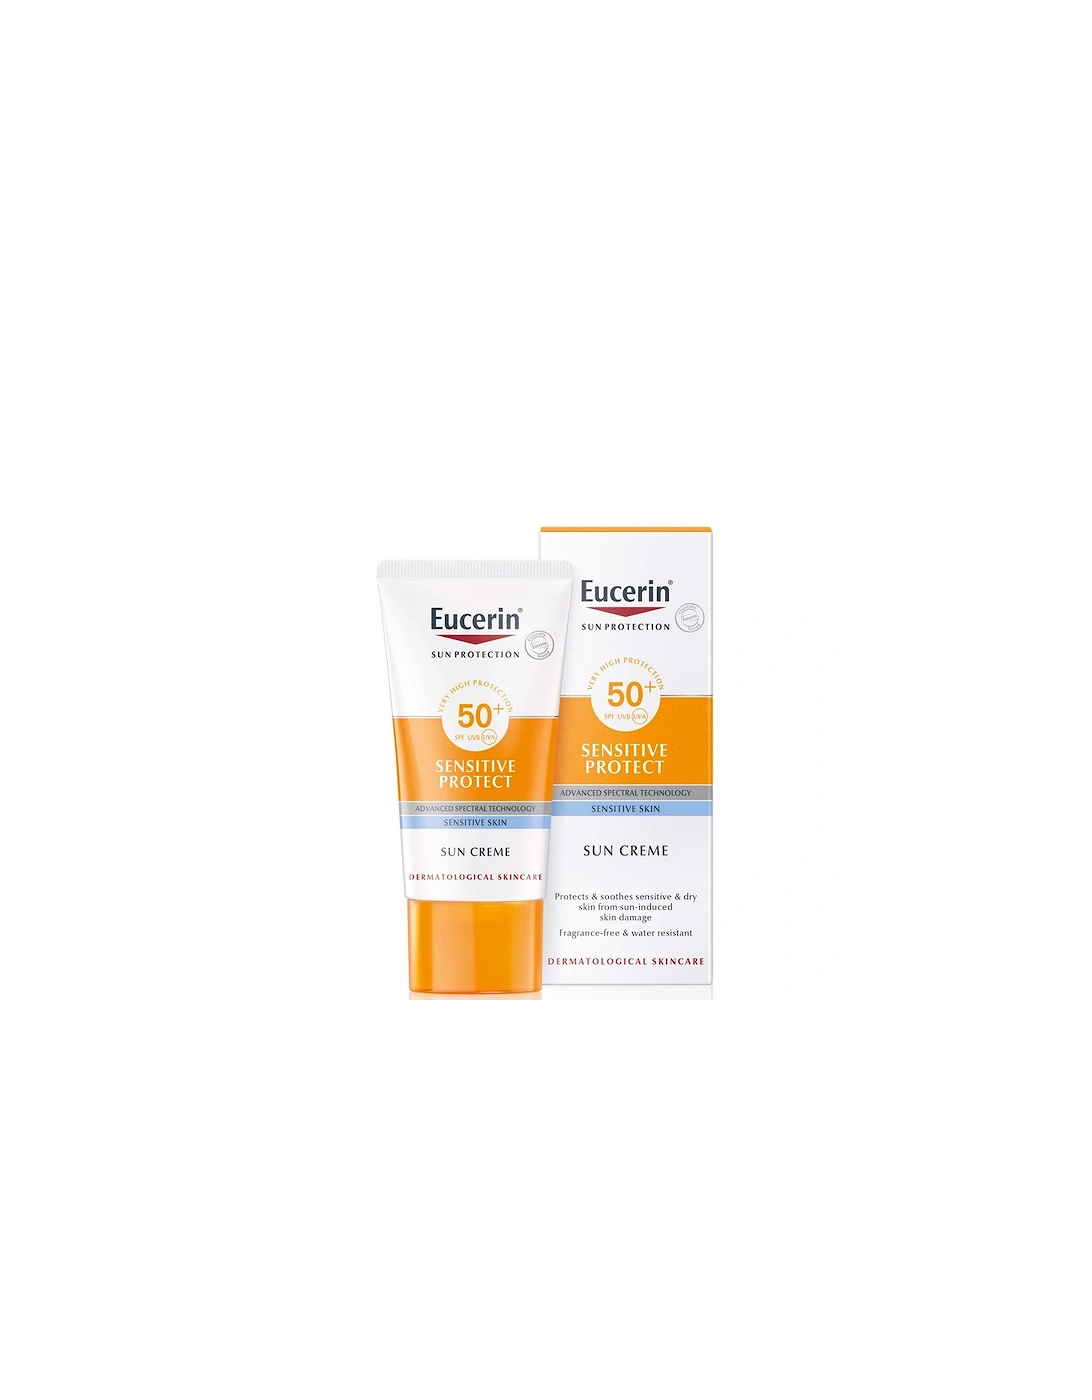 Sun Sensitive Protect Face Sun Cream SPF50+ 50ml - Eucerin, 2 of 1